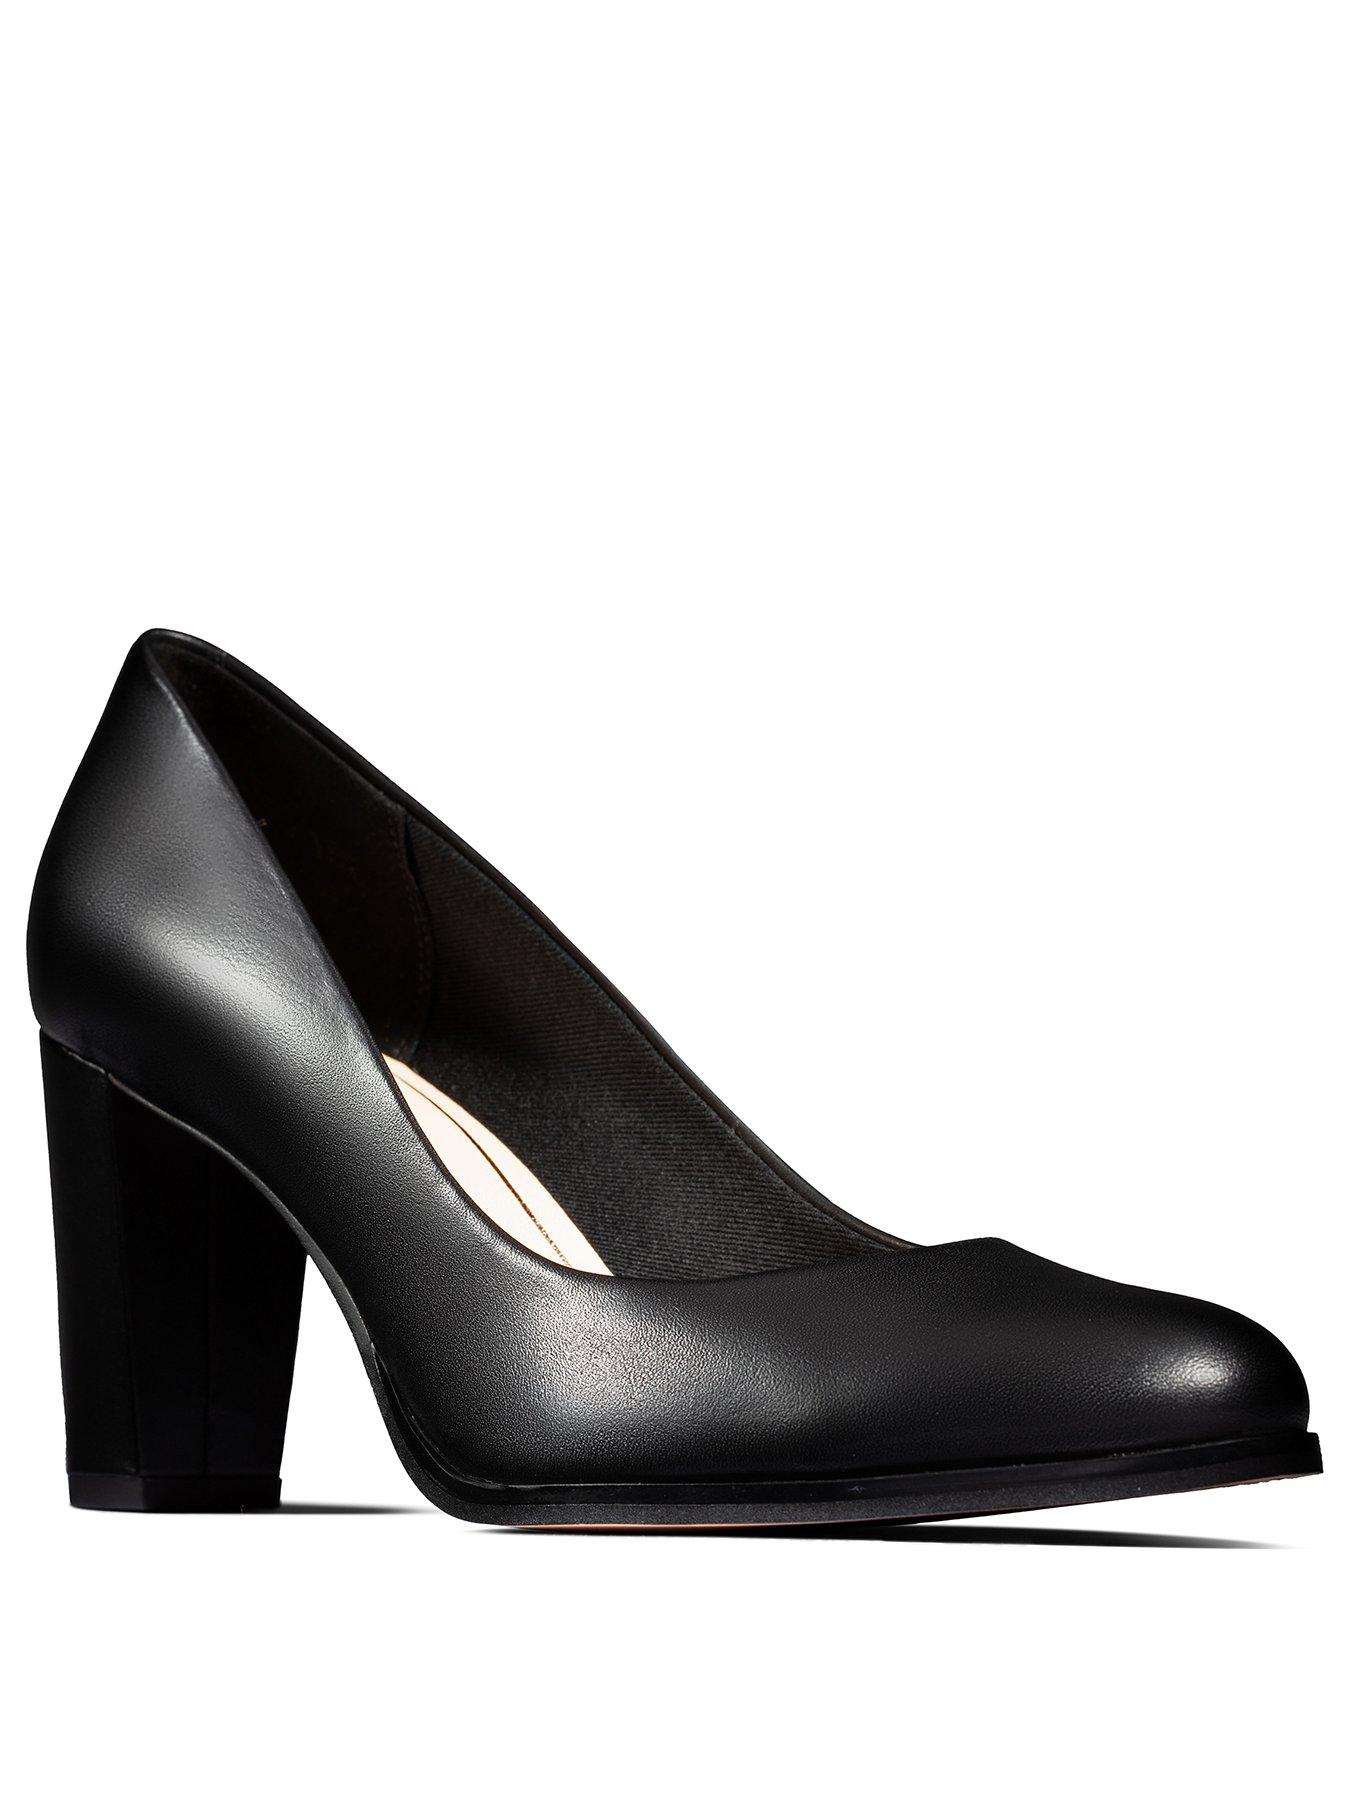 black clarks heels